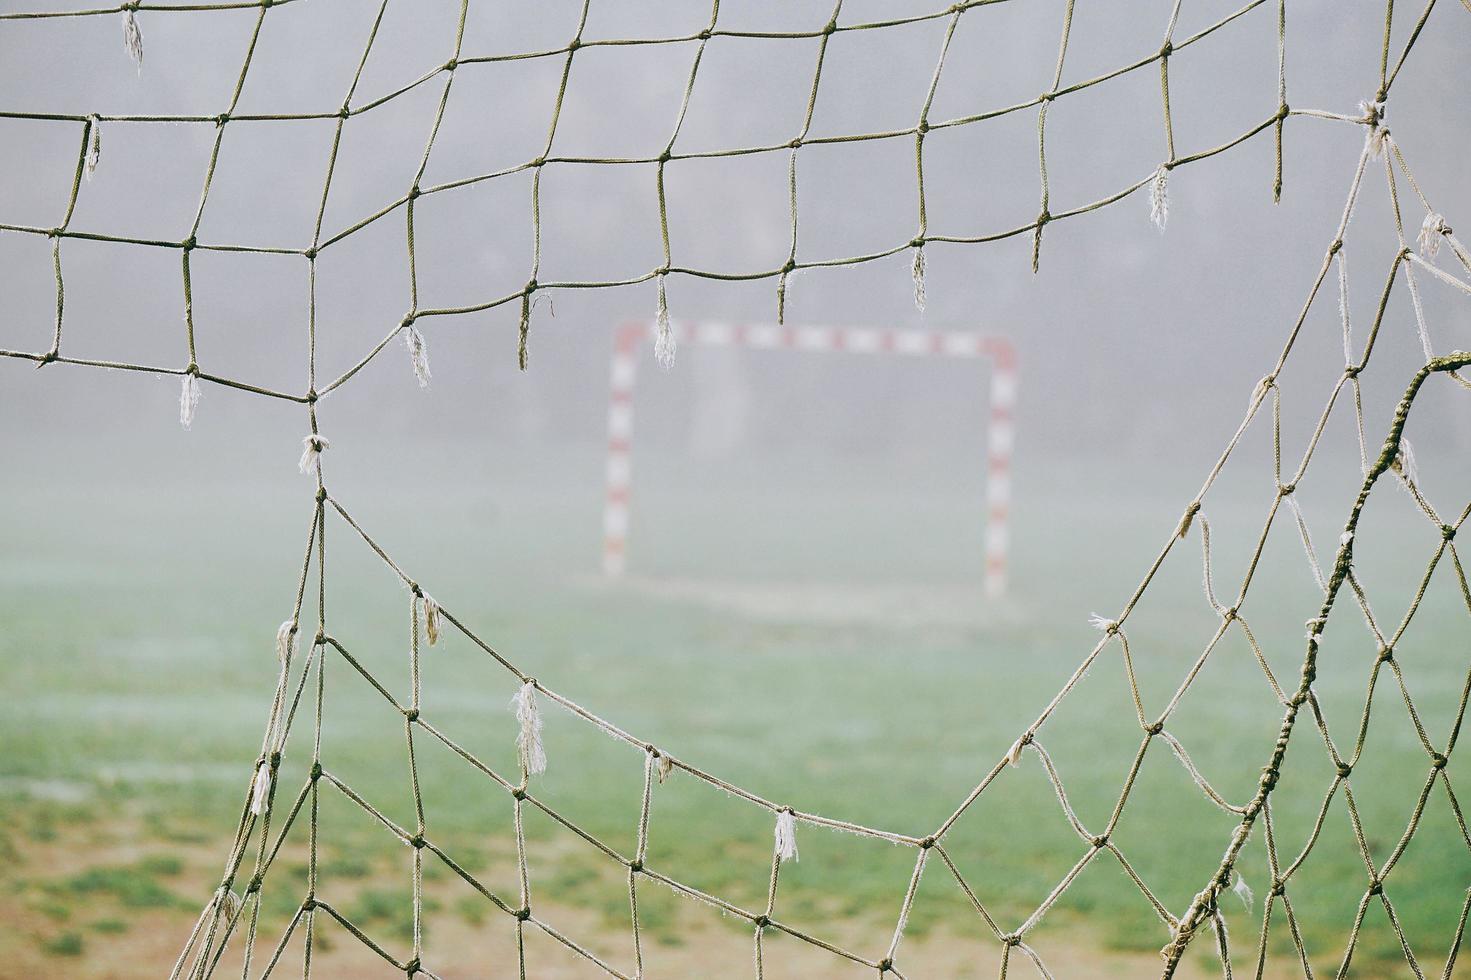 Soccer net on a field photo